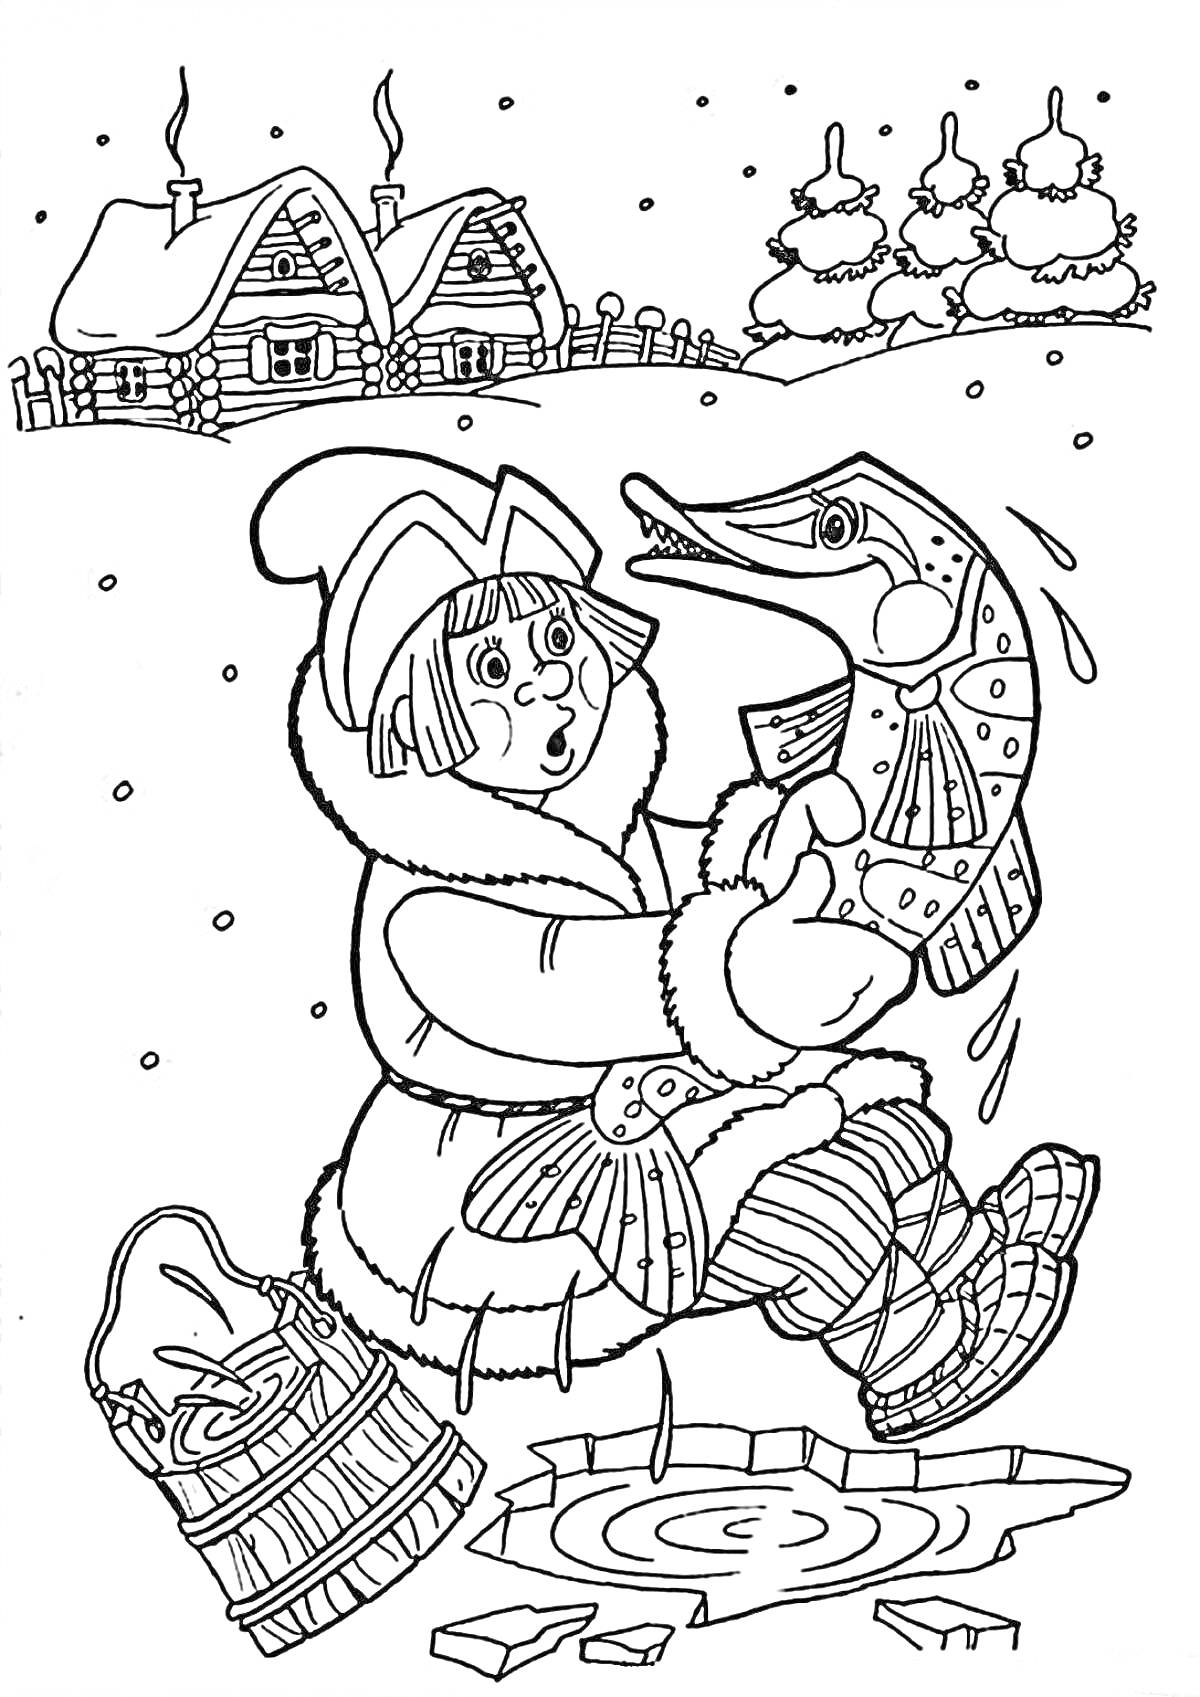 Мальчик в зимней одежде отпускает щуку в прорубь, корзинка на льду, снег, избы с трубами из которых идет дым на заднем плане, заснеженные елки